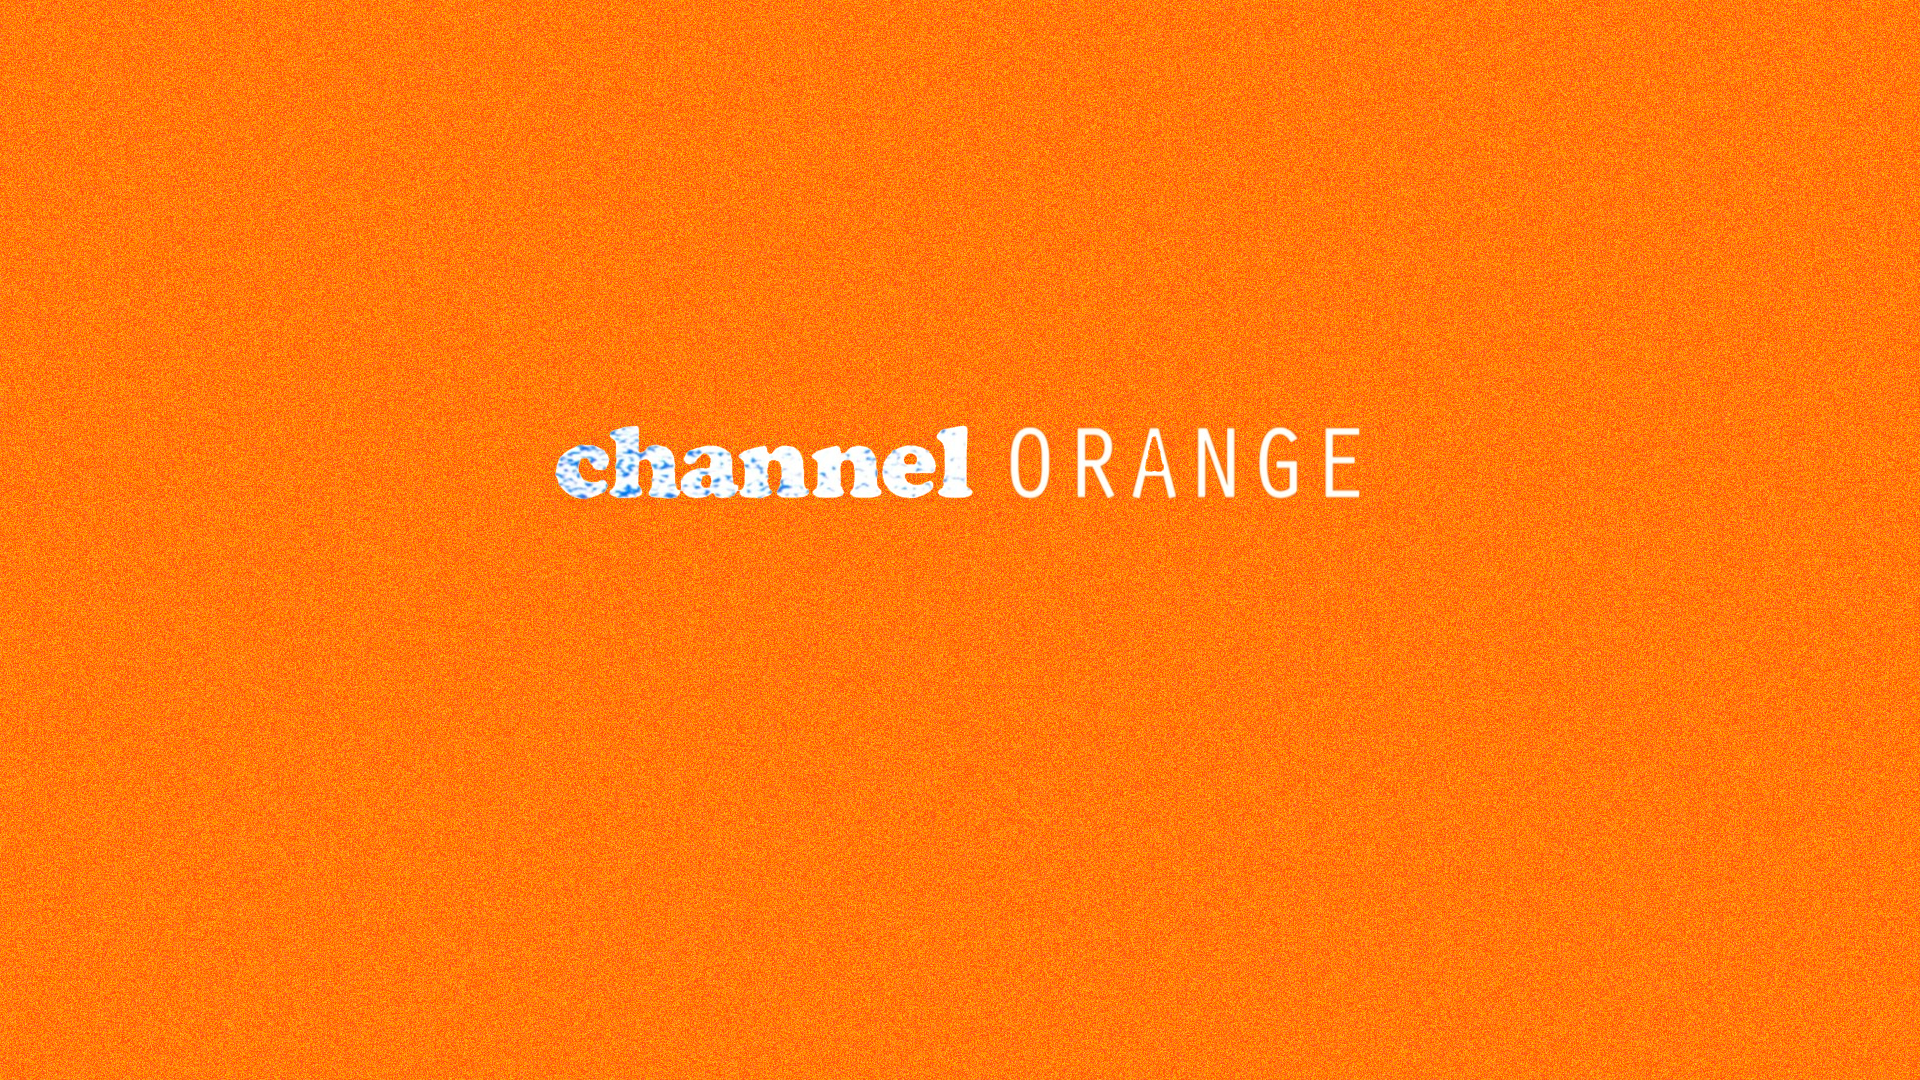 Channel orange wallpaper